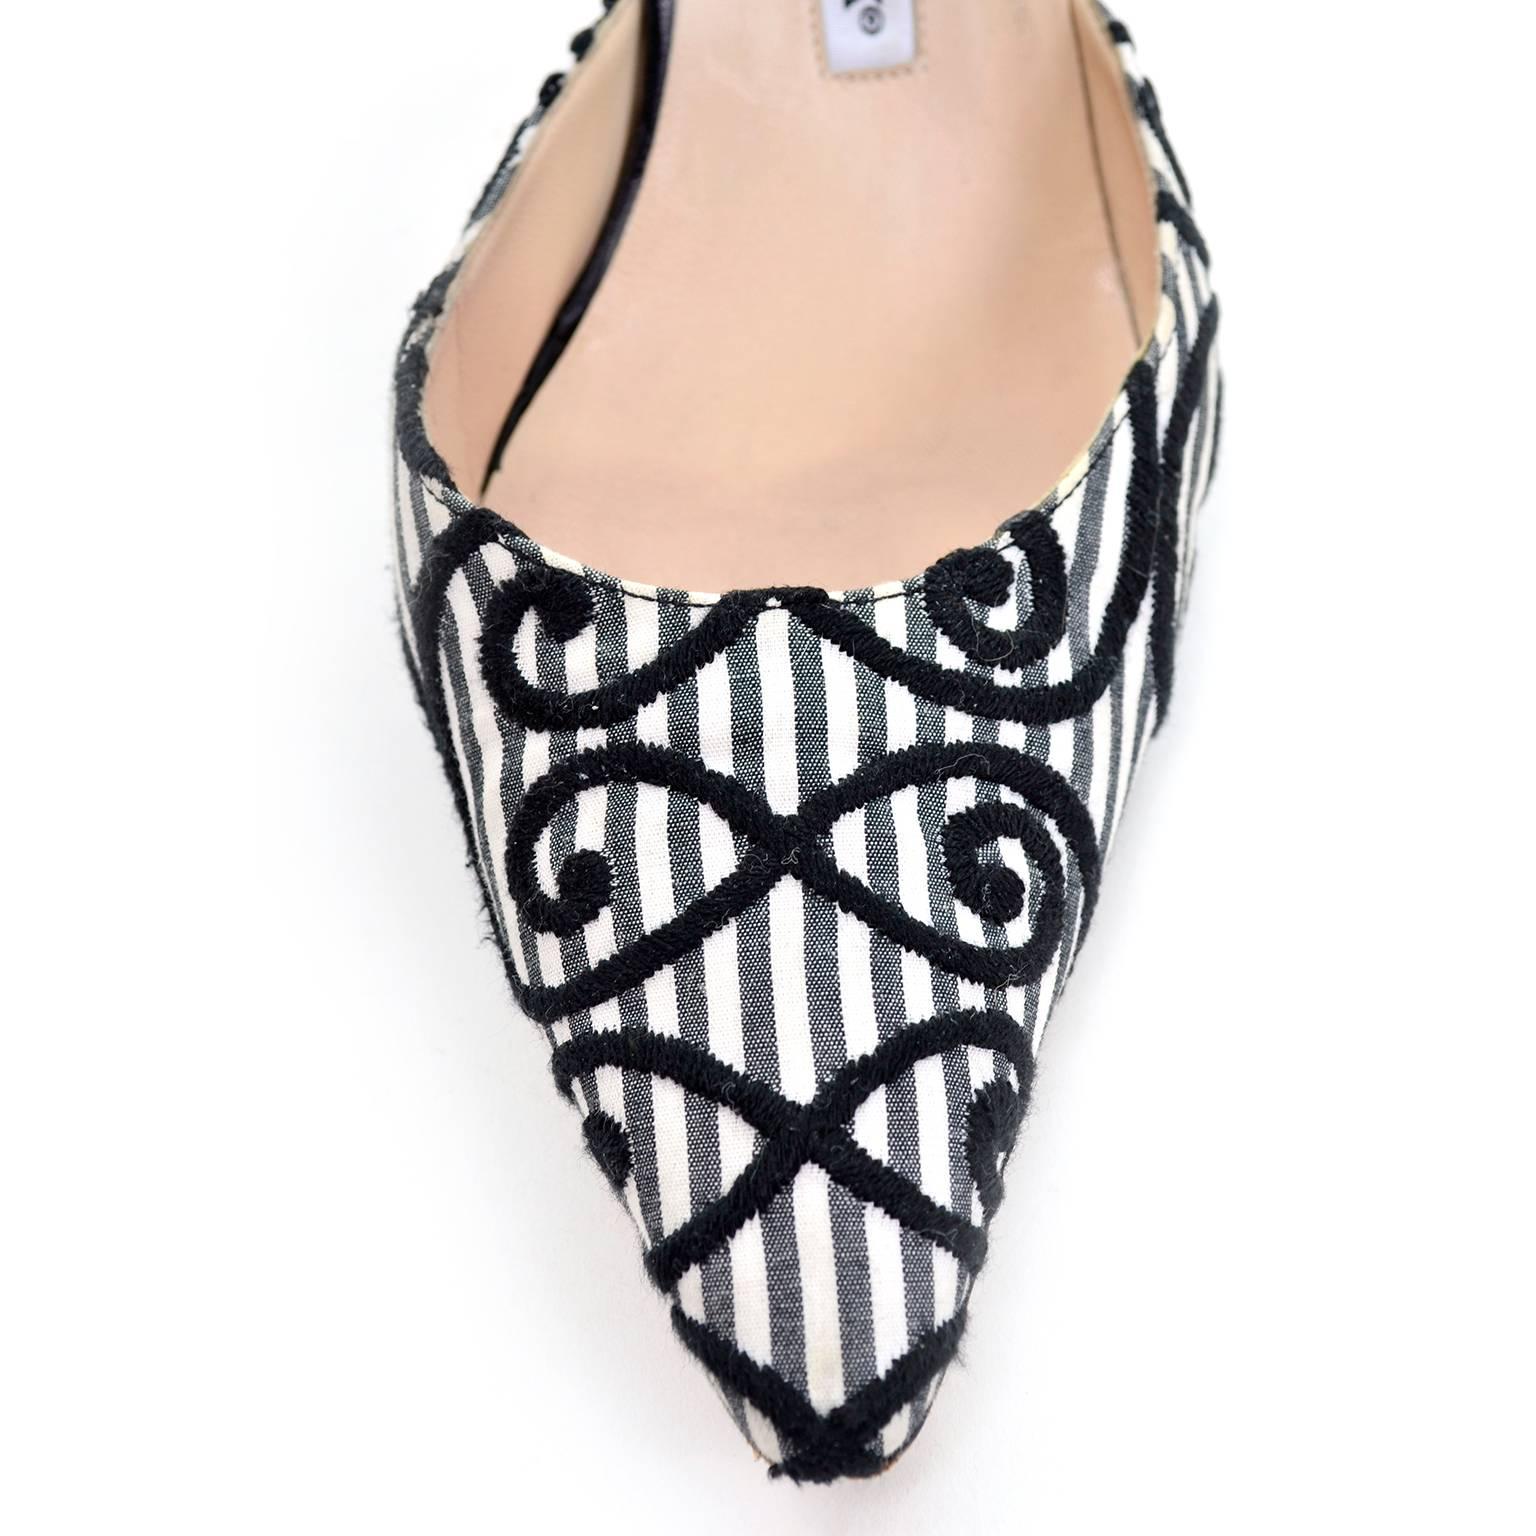 Beige Manolo Blahnik Carolyne Sling Back Shoes in Black & White Swirls Size 37.5